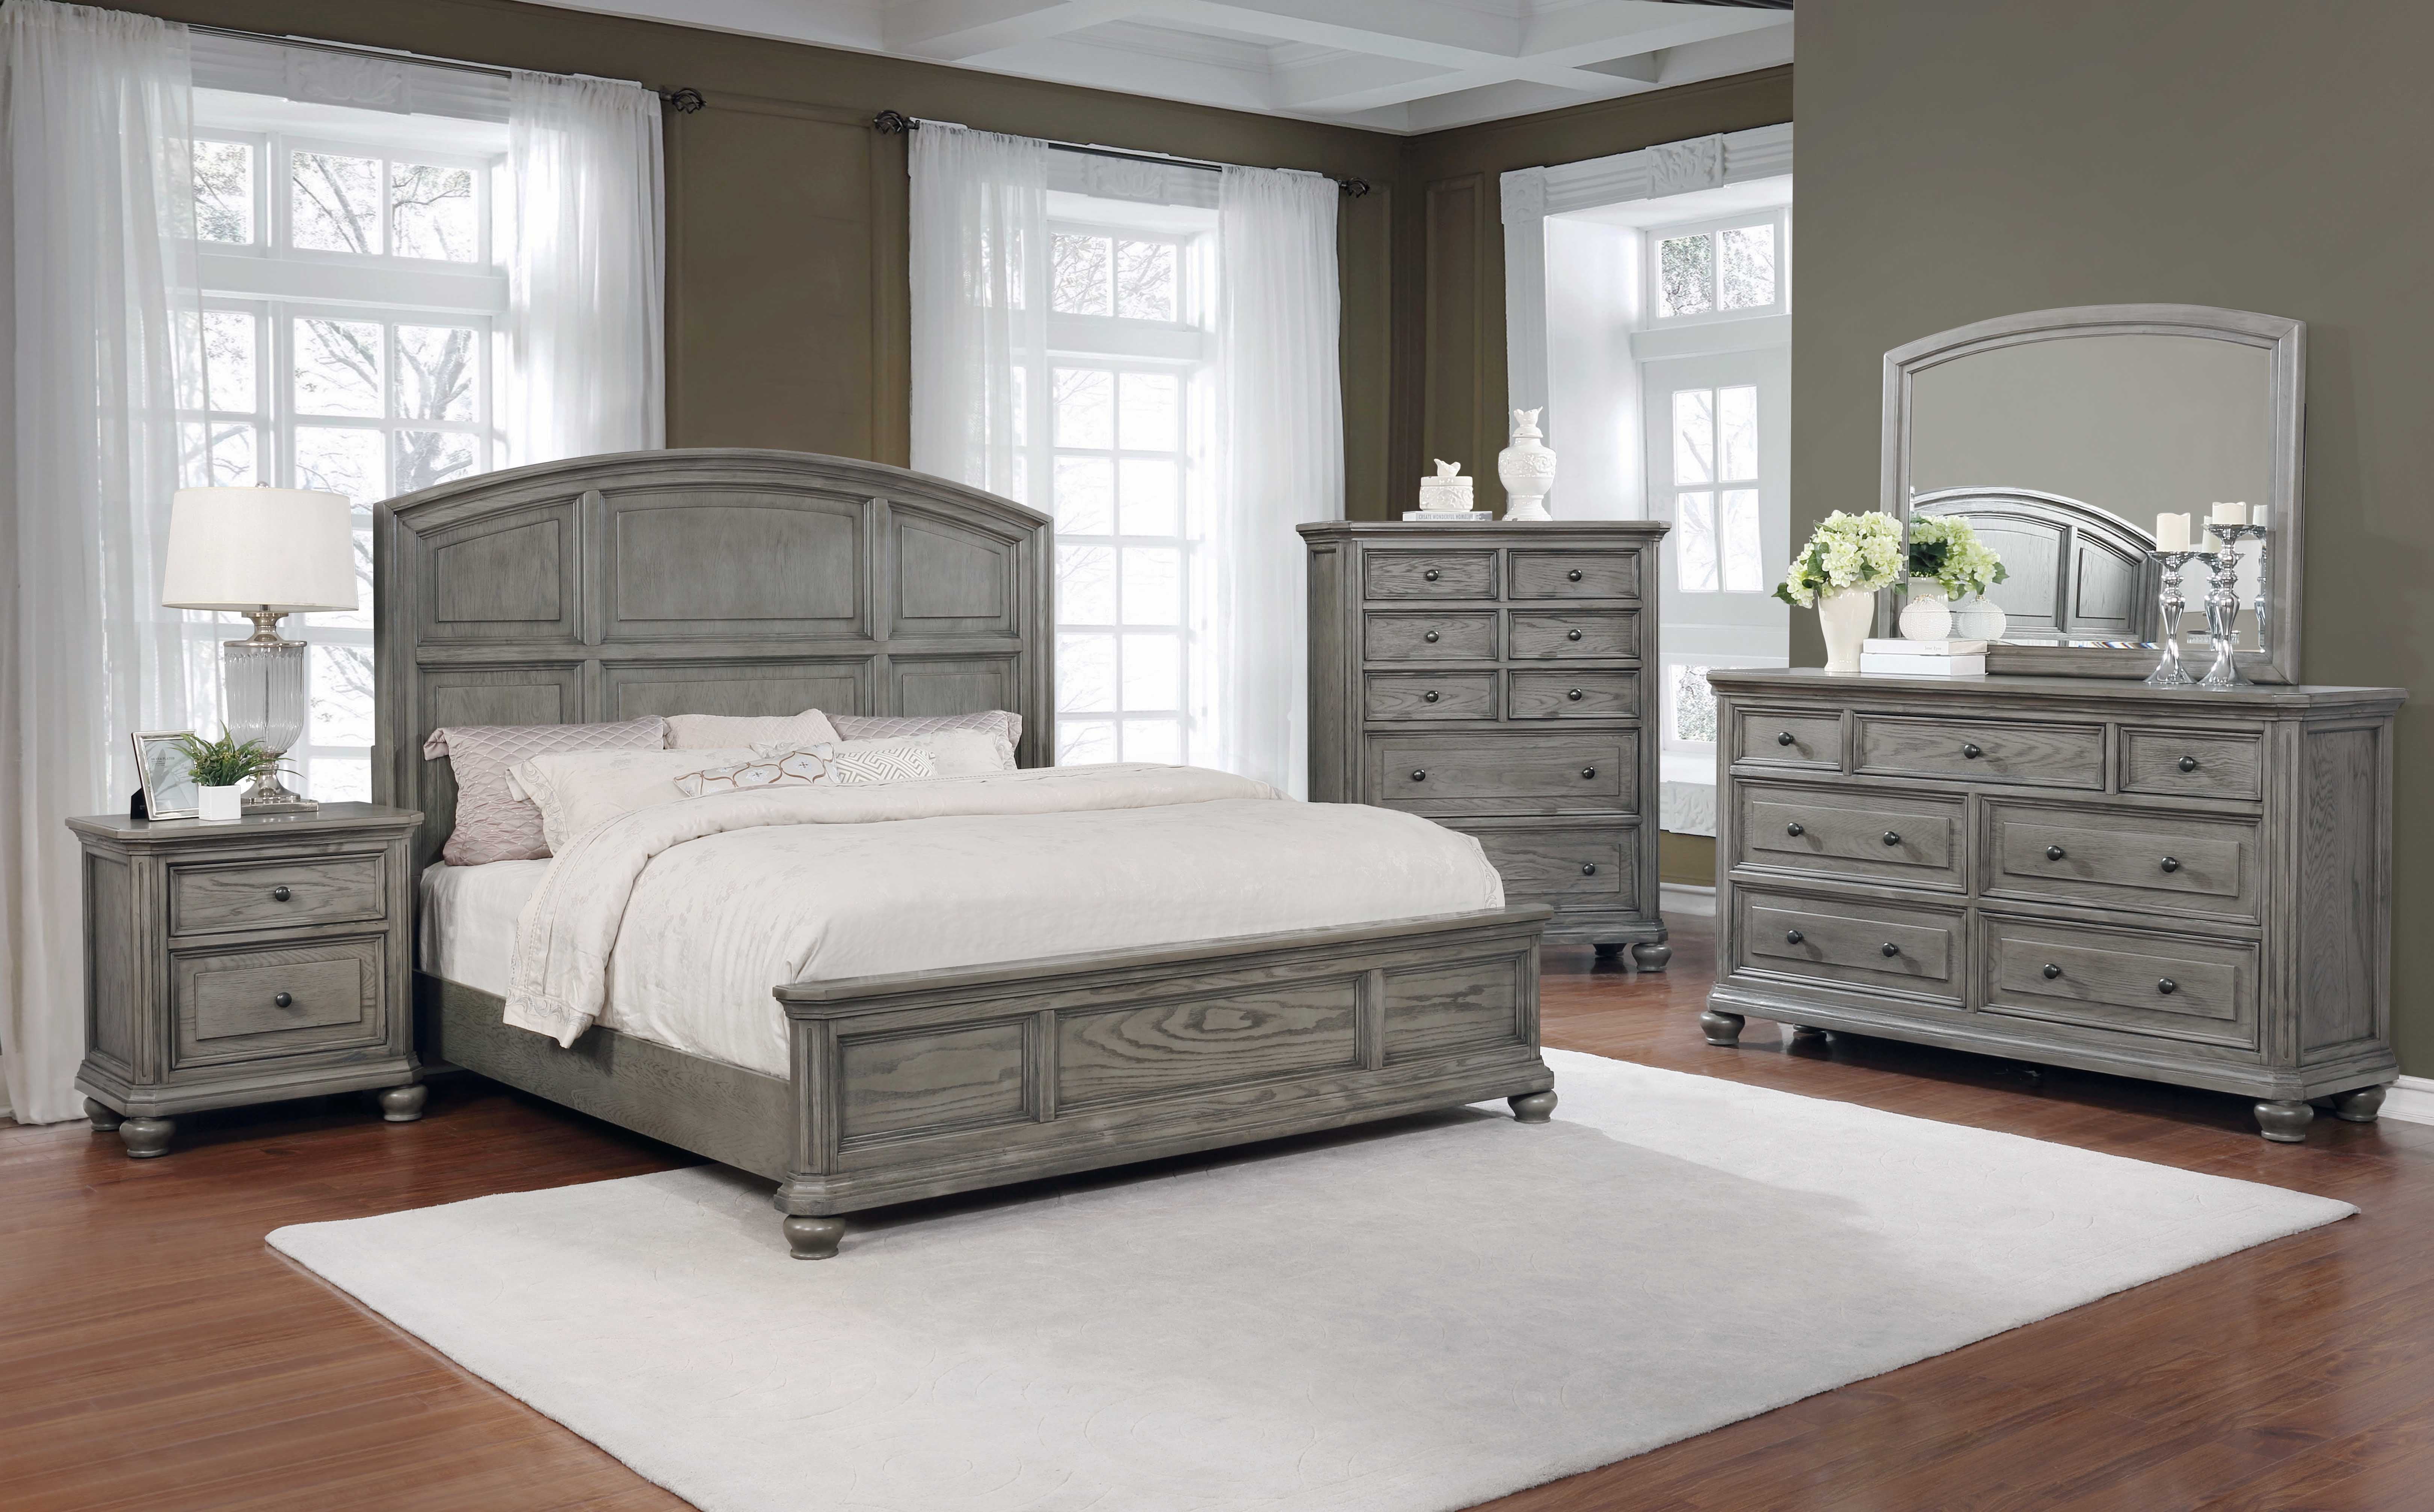 Best Master Furniture 5 Pcs Queen Bedroom Set in Grey Rustic Wood